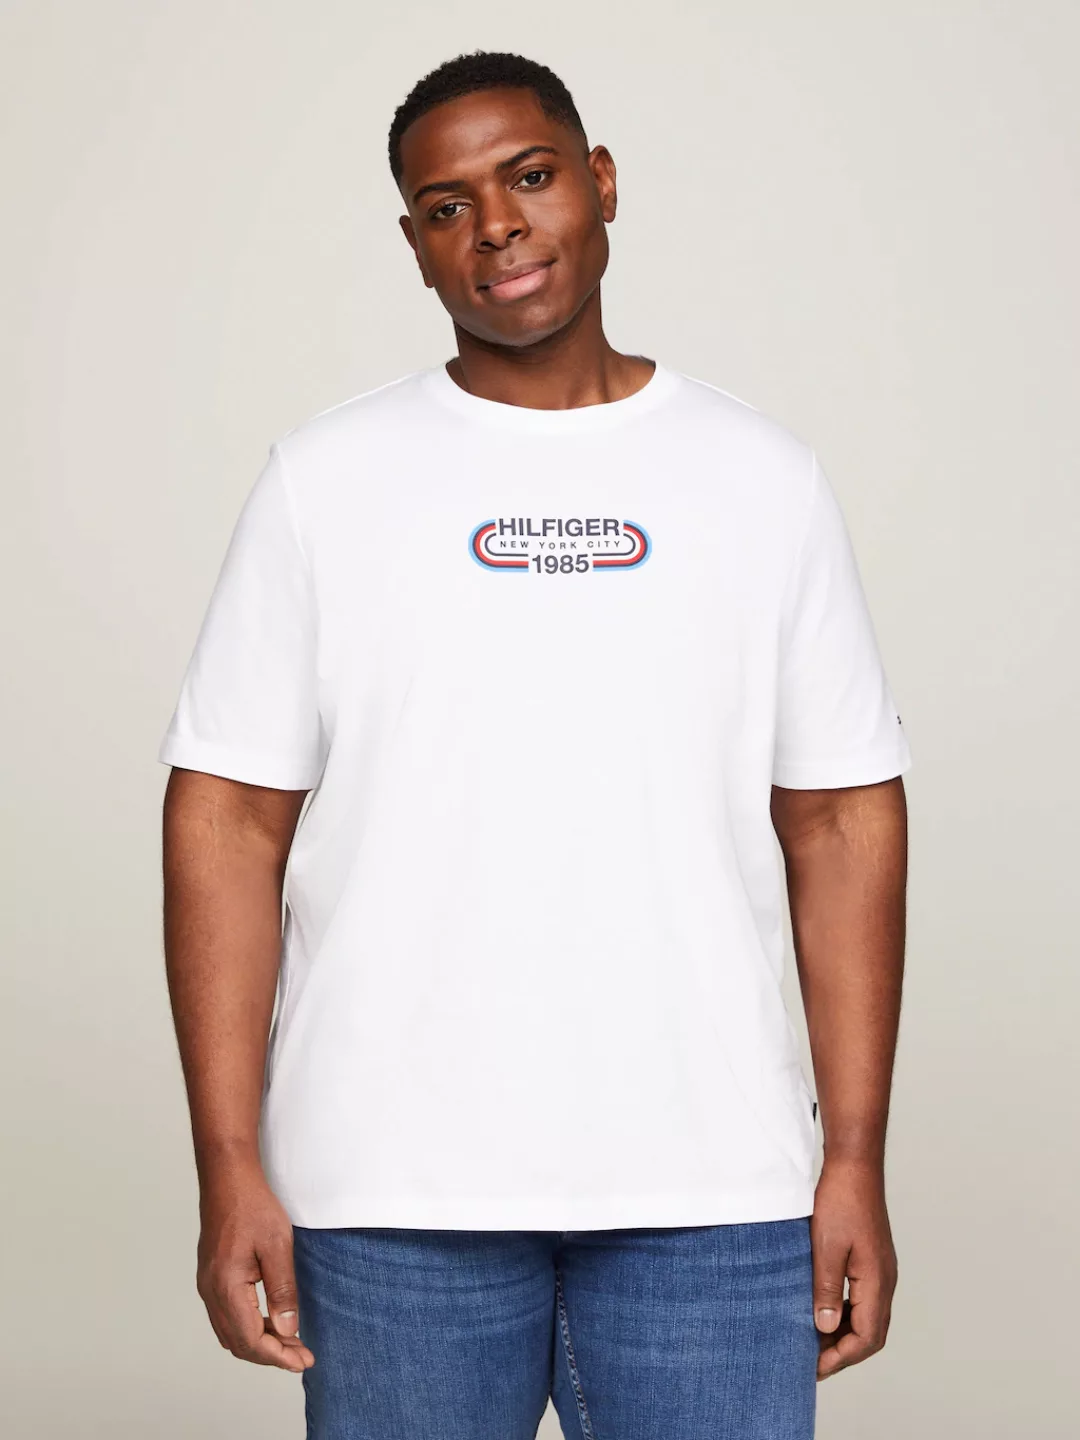 Tommy Hilfiger Big & Tall T-Shirt BT-HILFIGER TRACK GRAPHIC TEE-B Große Grö günstig online kaufen